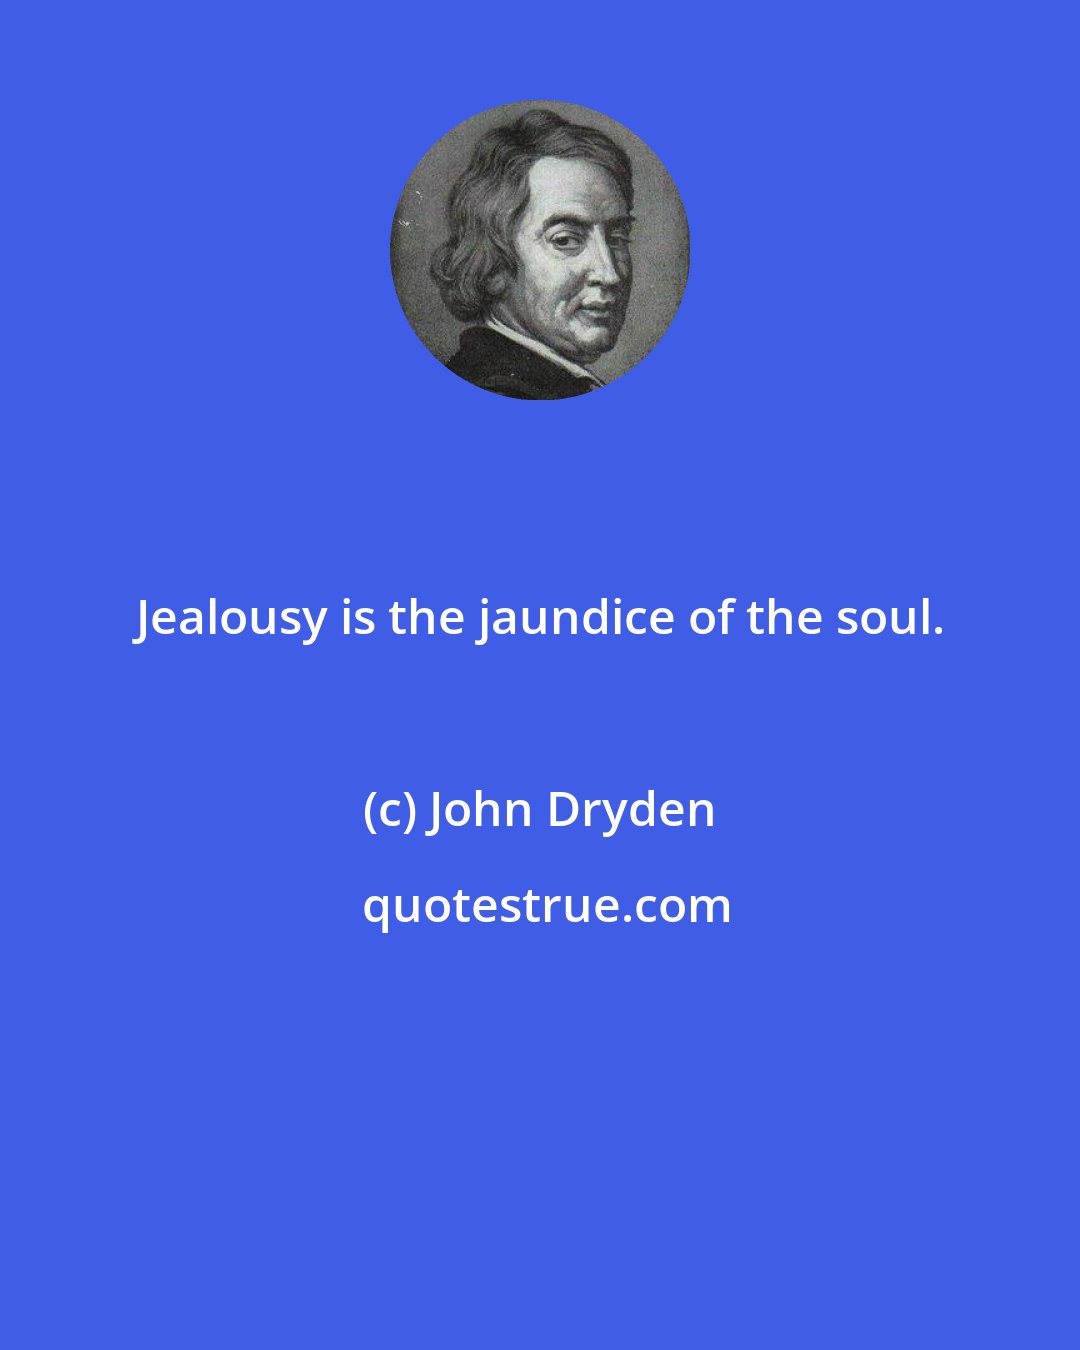 John Dryden: Jealousy is the jaundice of the soul.